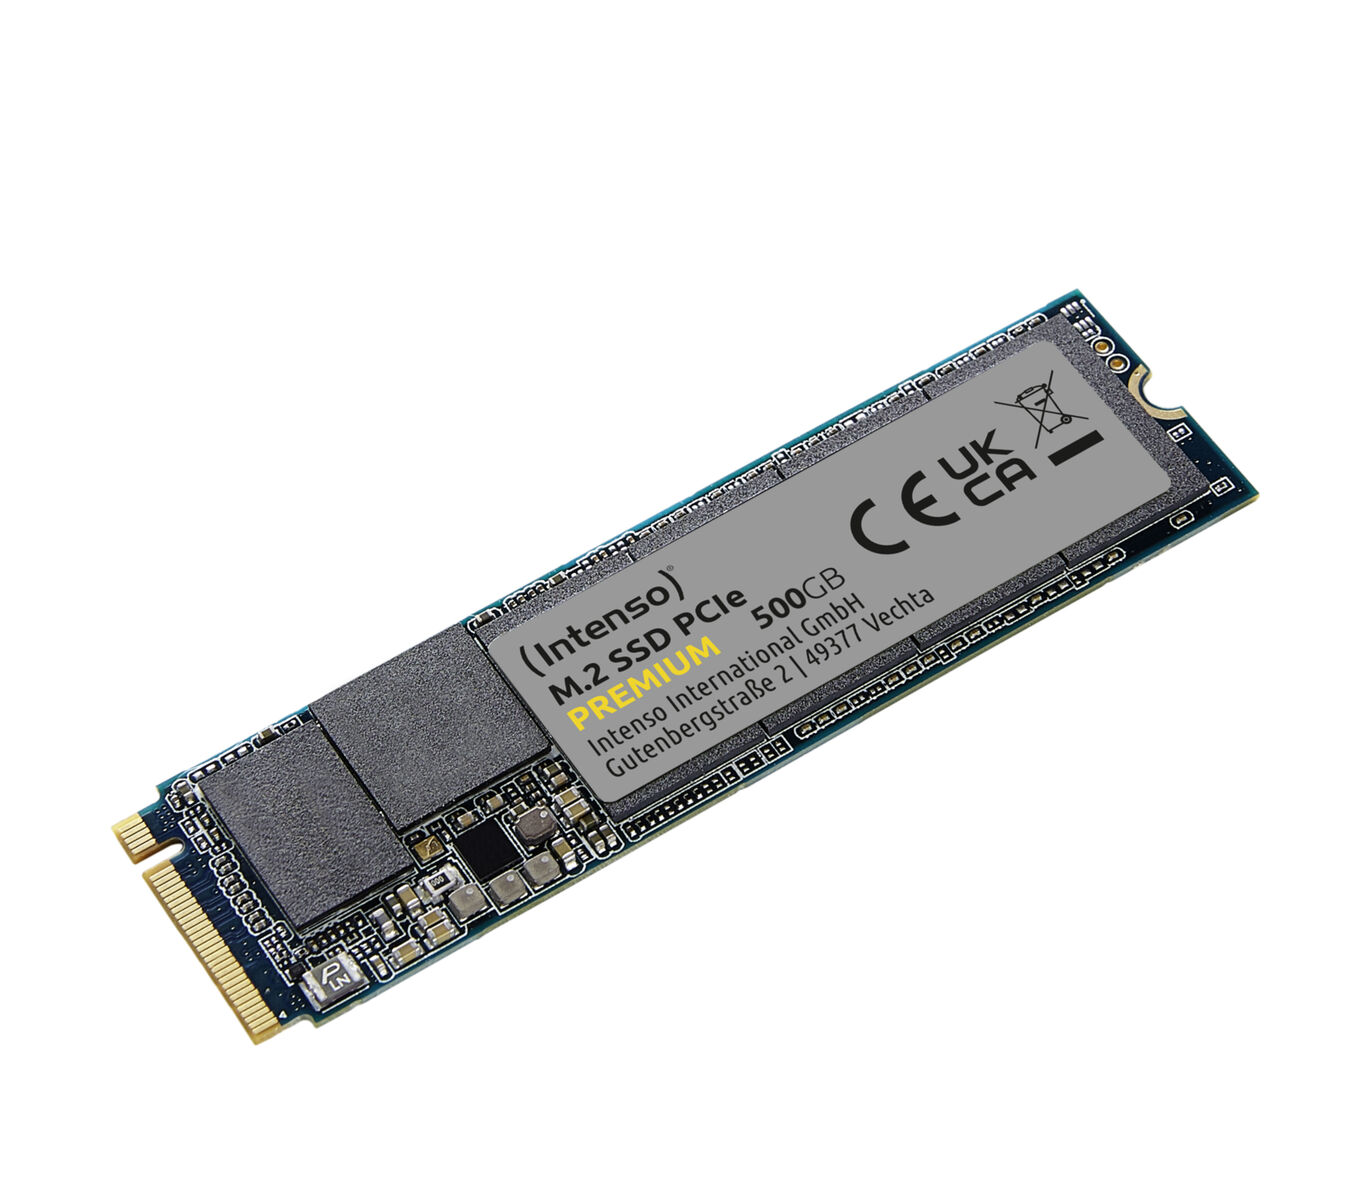 M.2 intern INTENSO 500 SSD, Premium GB, PCIe, SSD 500GB